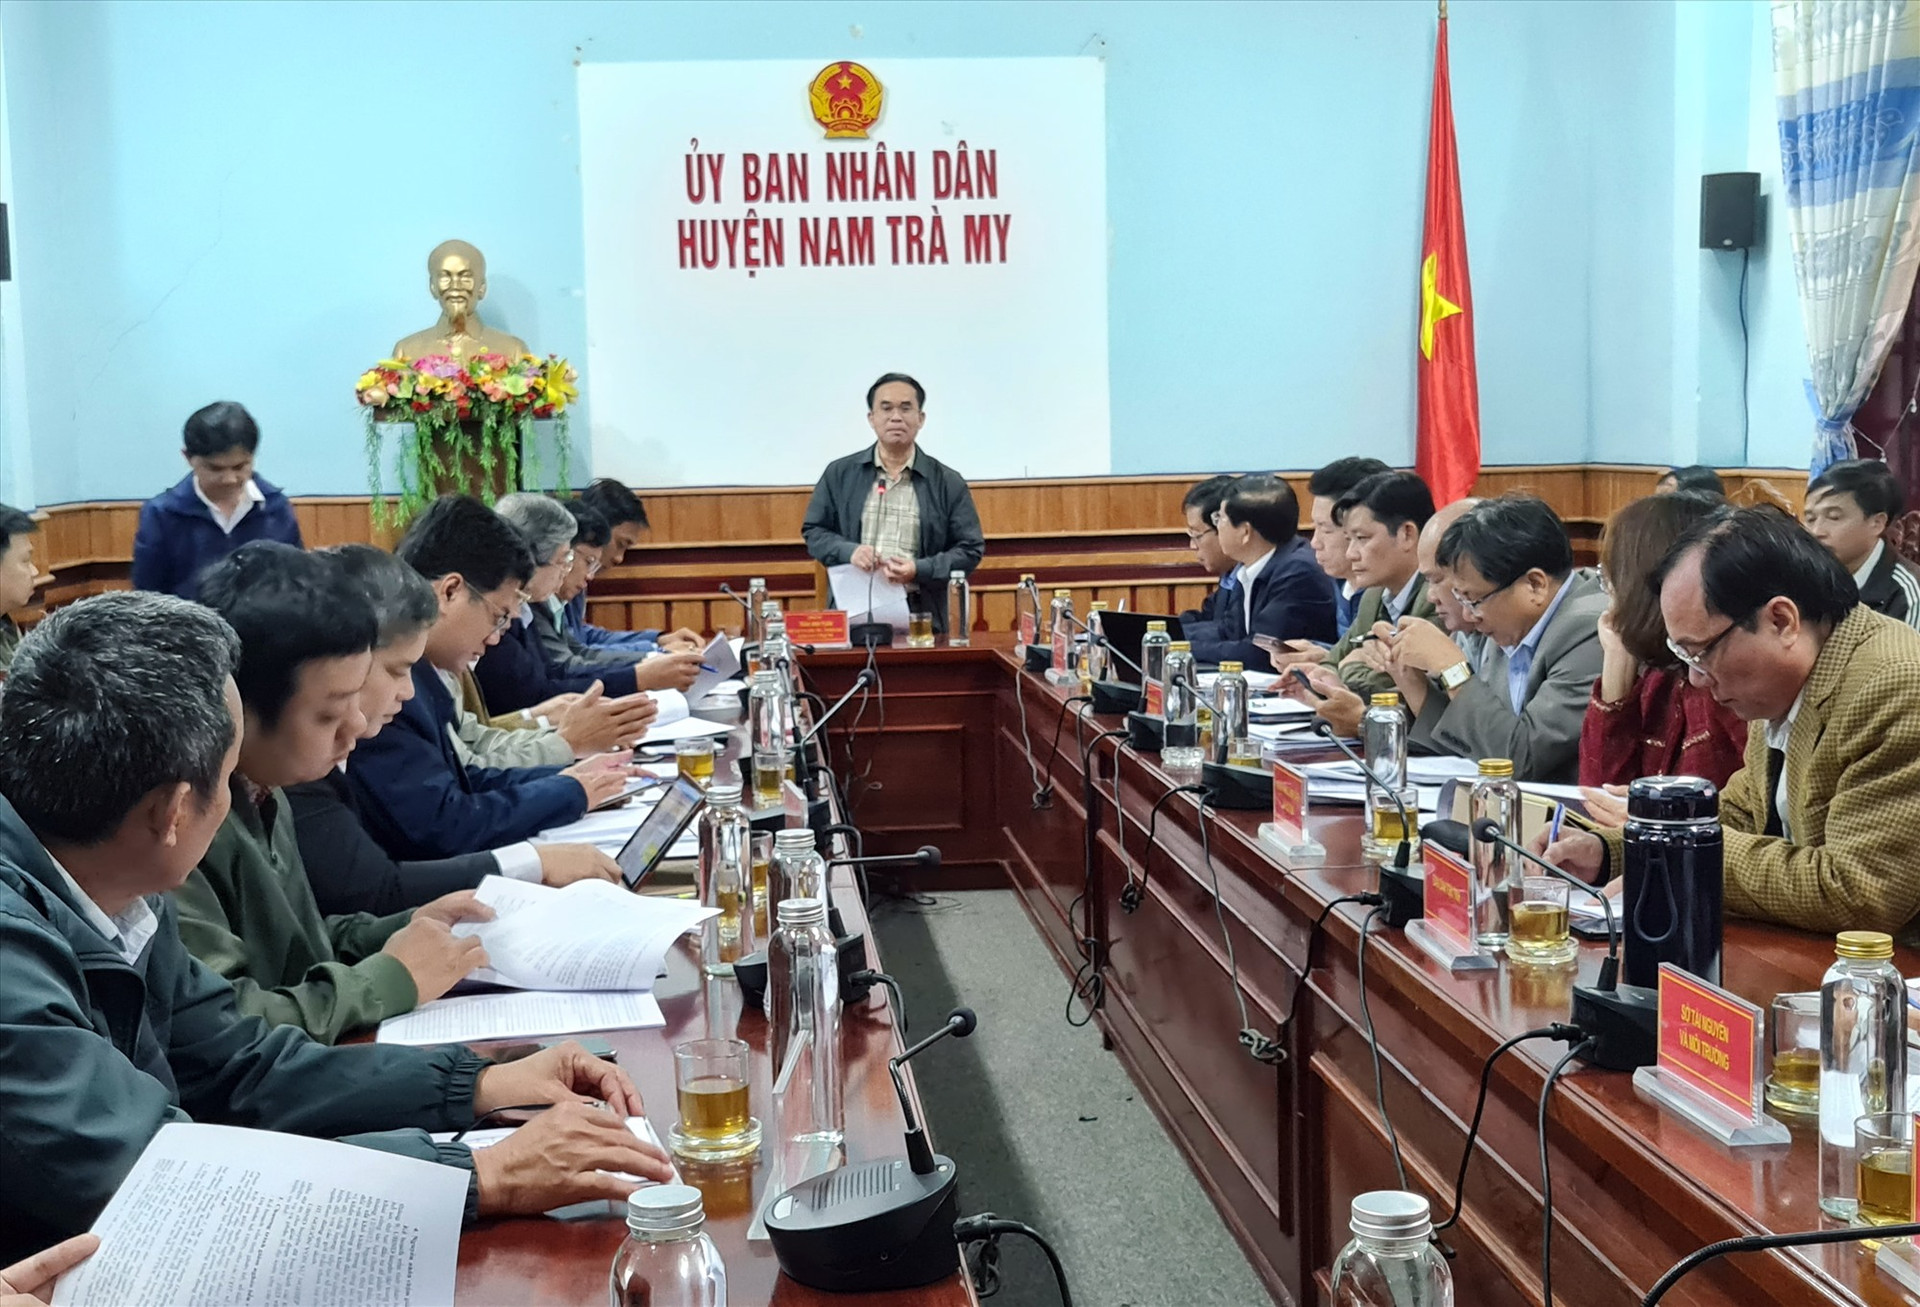 Phó Chủ tịch UBND tỉnh Trần Anh Tuấn yêu cầu 2 huyện Nam Trà My, Bắc Trà My thúc đẩy giải ngân vốn chương trình mục tiêu quốc gia. Ảnh: D.L